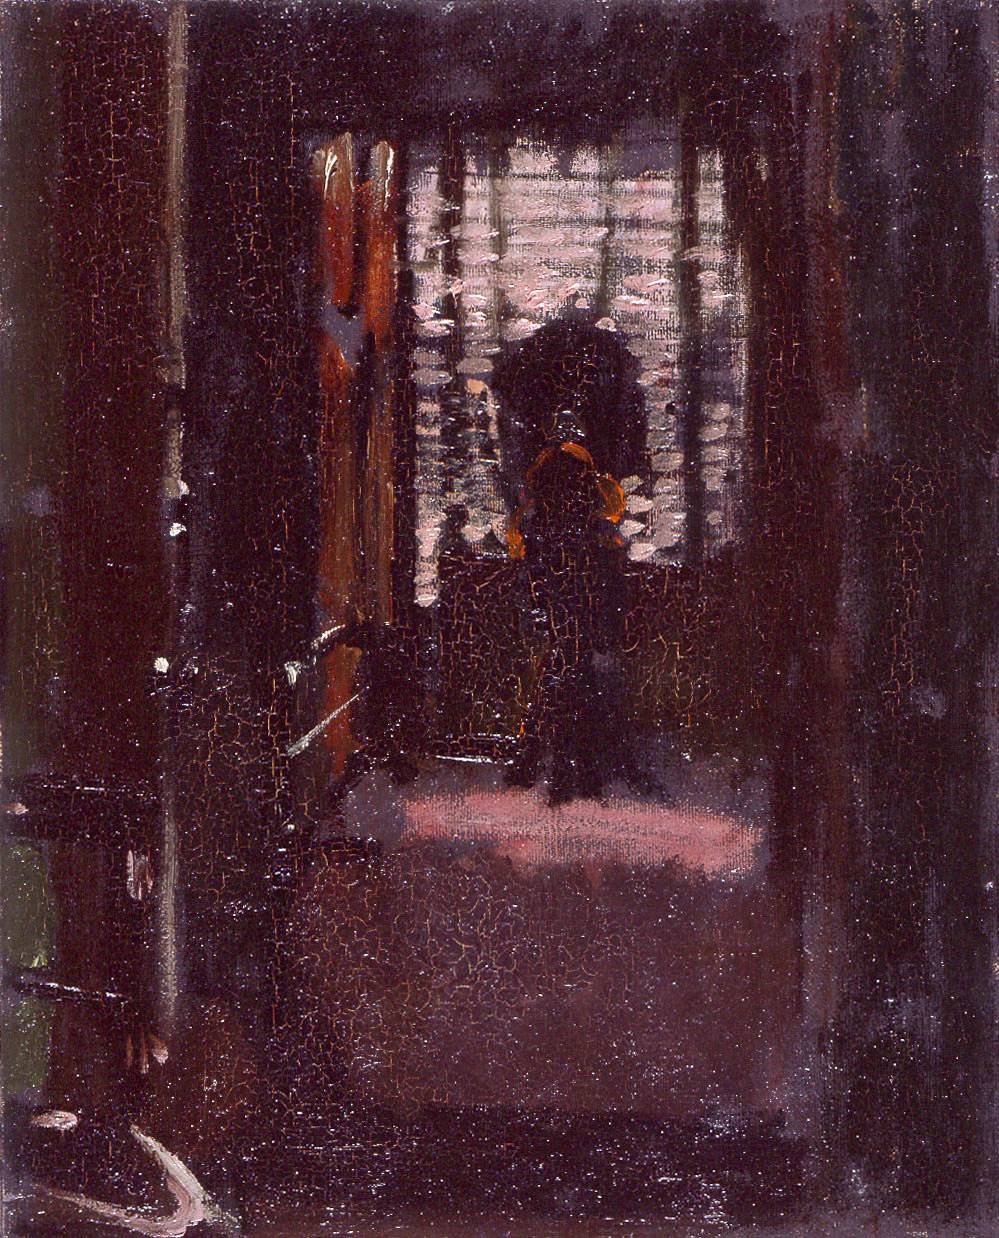 Walter Sickert, "La chambre de Jack l'Éventreur" (vers 1907), huile sur toile, Manchester City Art Galleries.